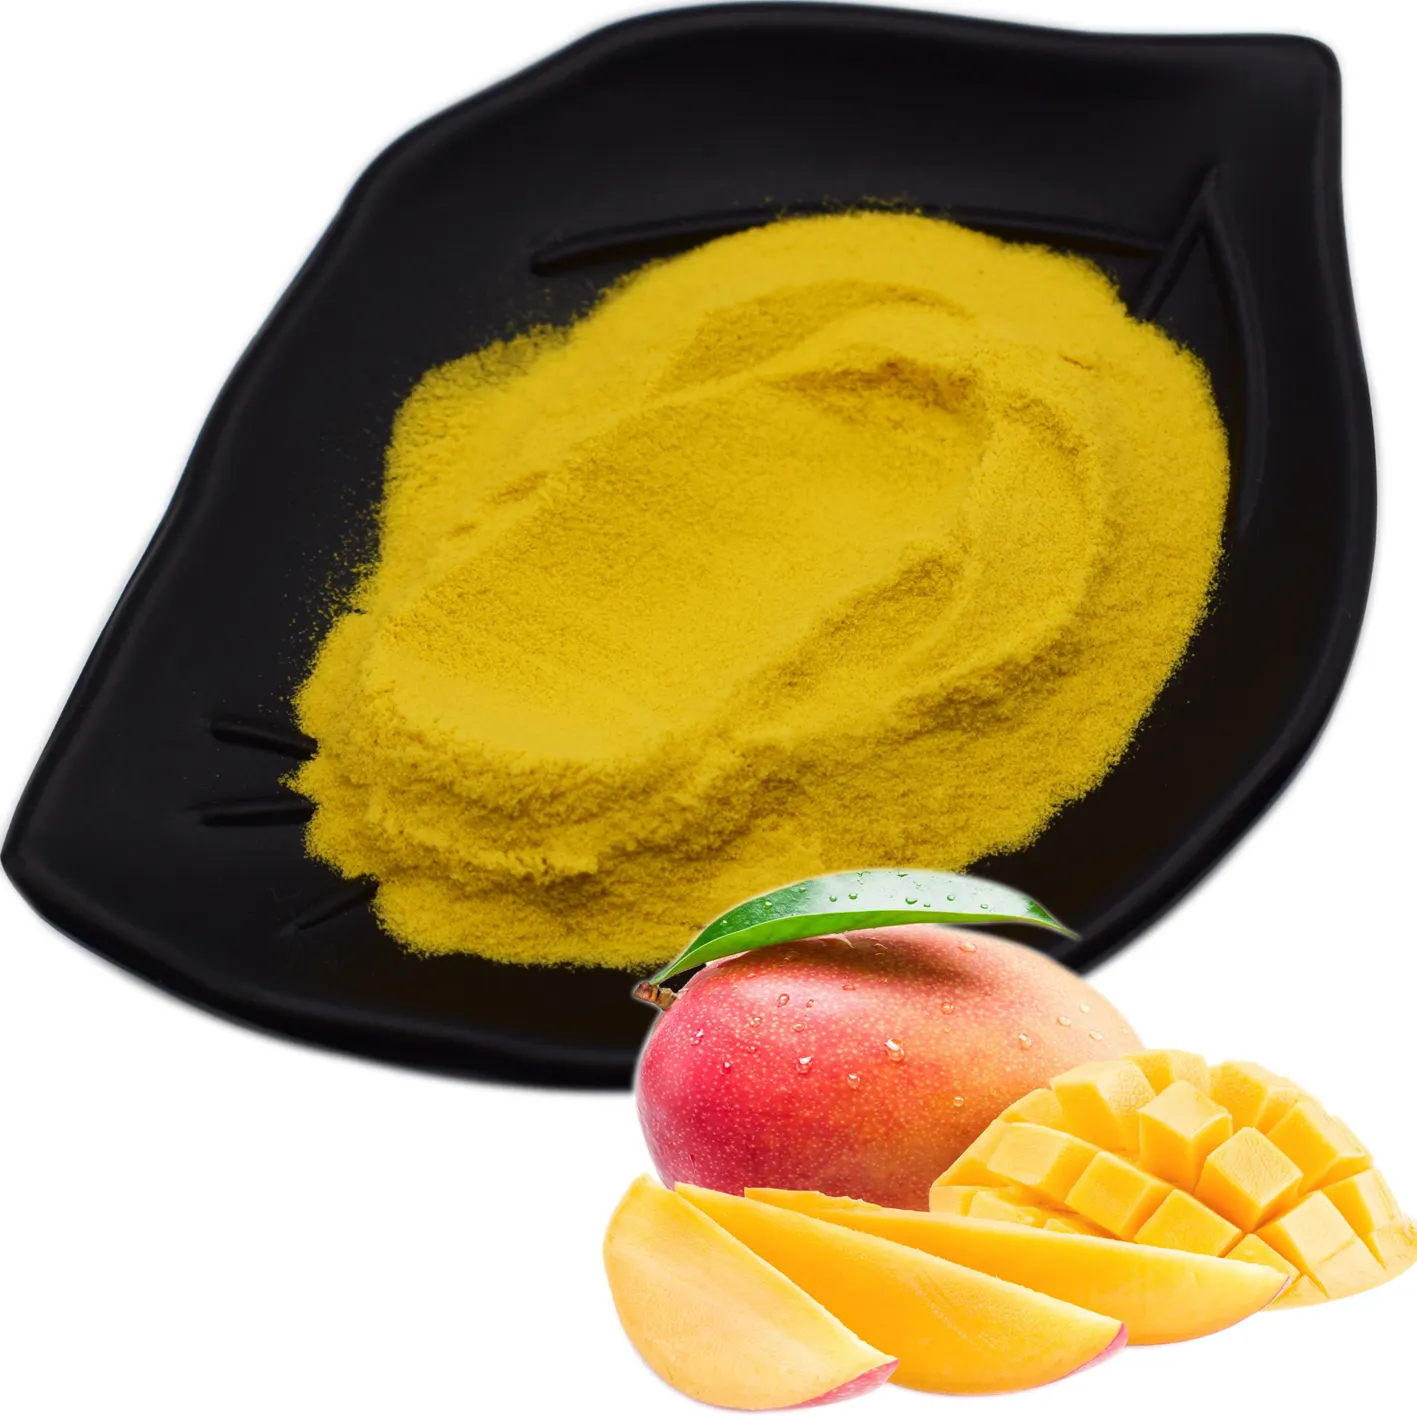 Großhandel Hochwertiges Instant getränk Mango Aroma Pulver